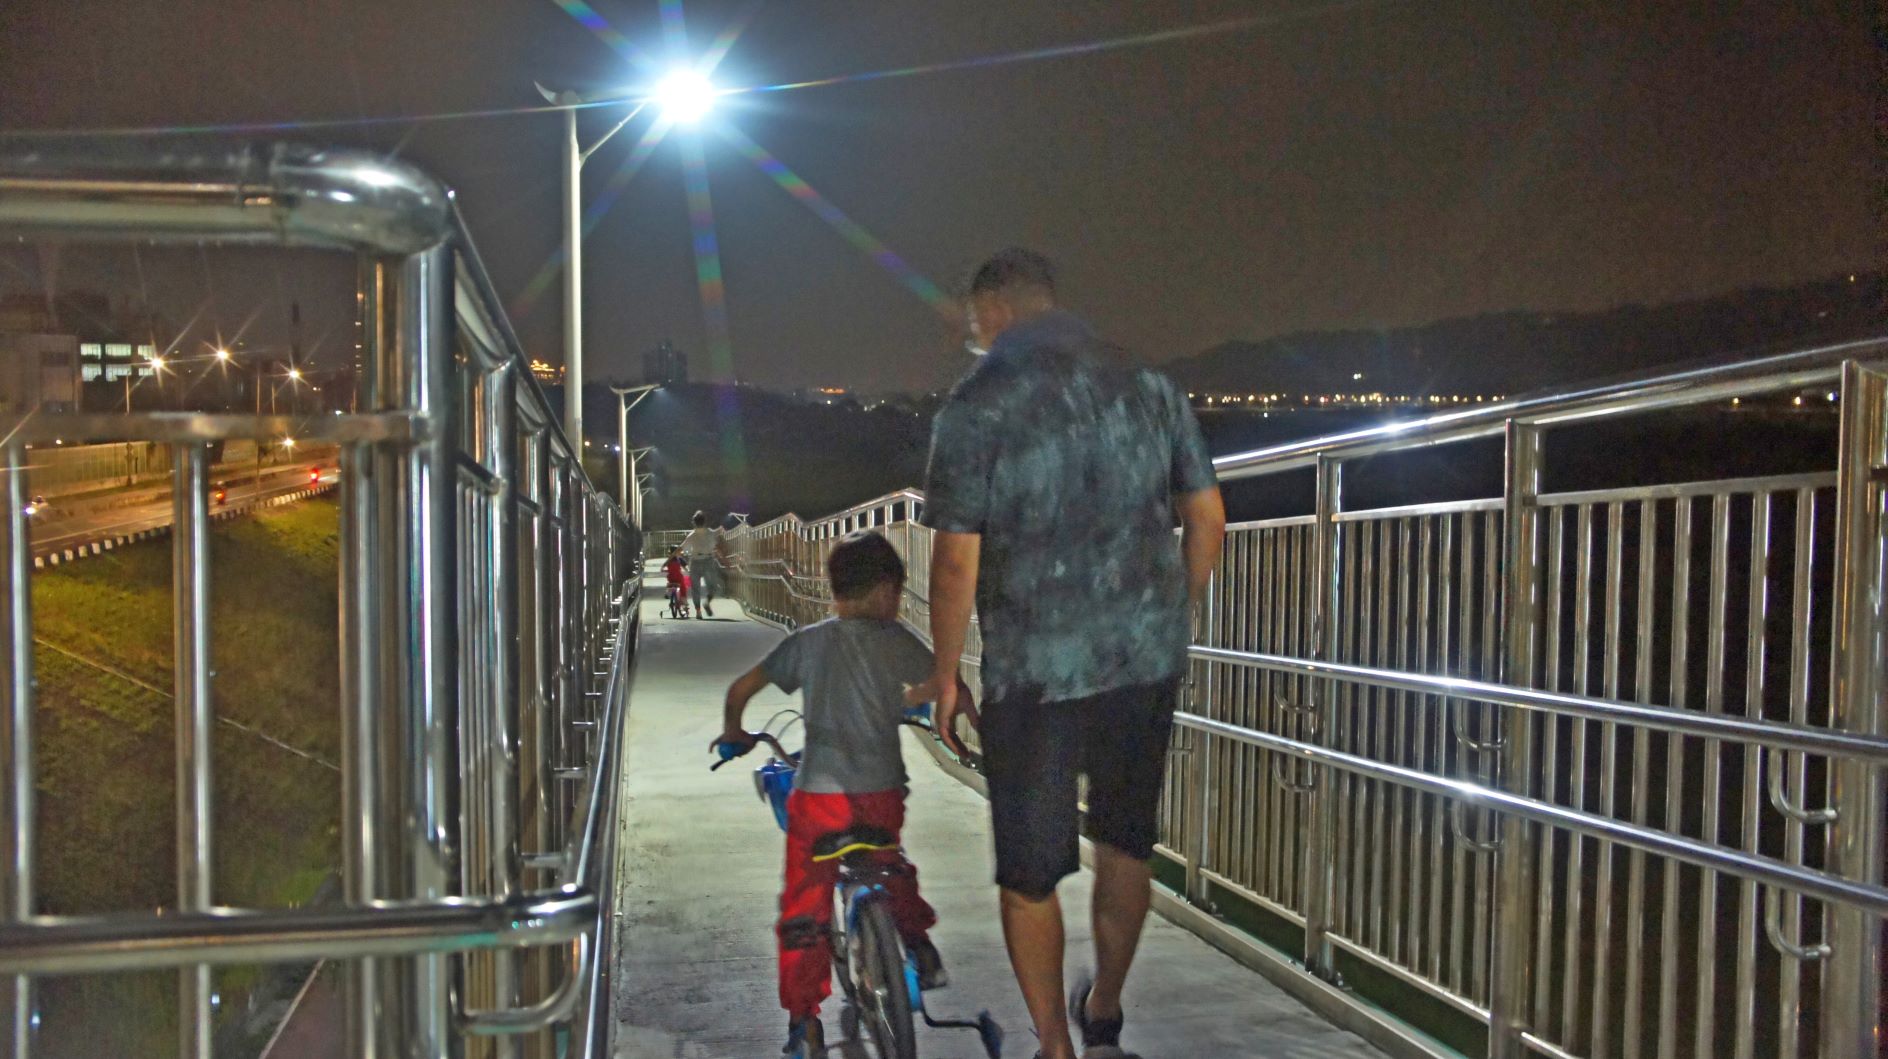 市民朋友可與小朋友利用擺接堡陸橋安全抵達河濱公園休憩